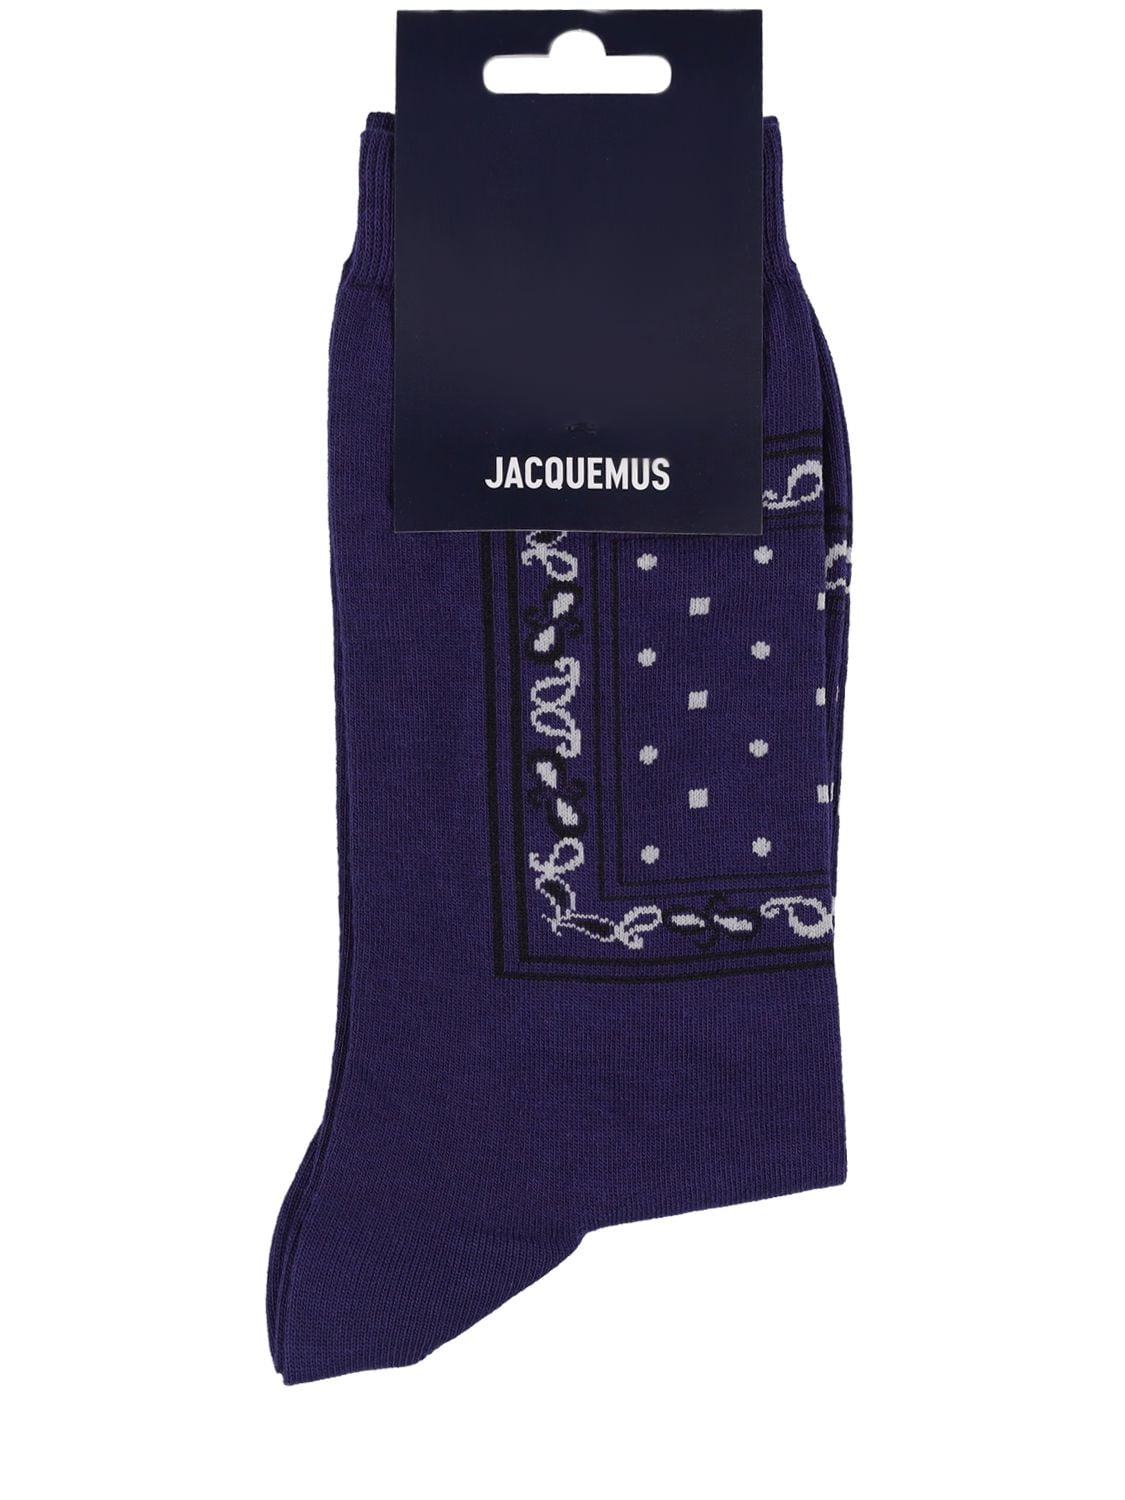 JACQUEMUS Les Chaussettes Bandana Socks